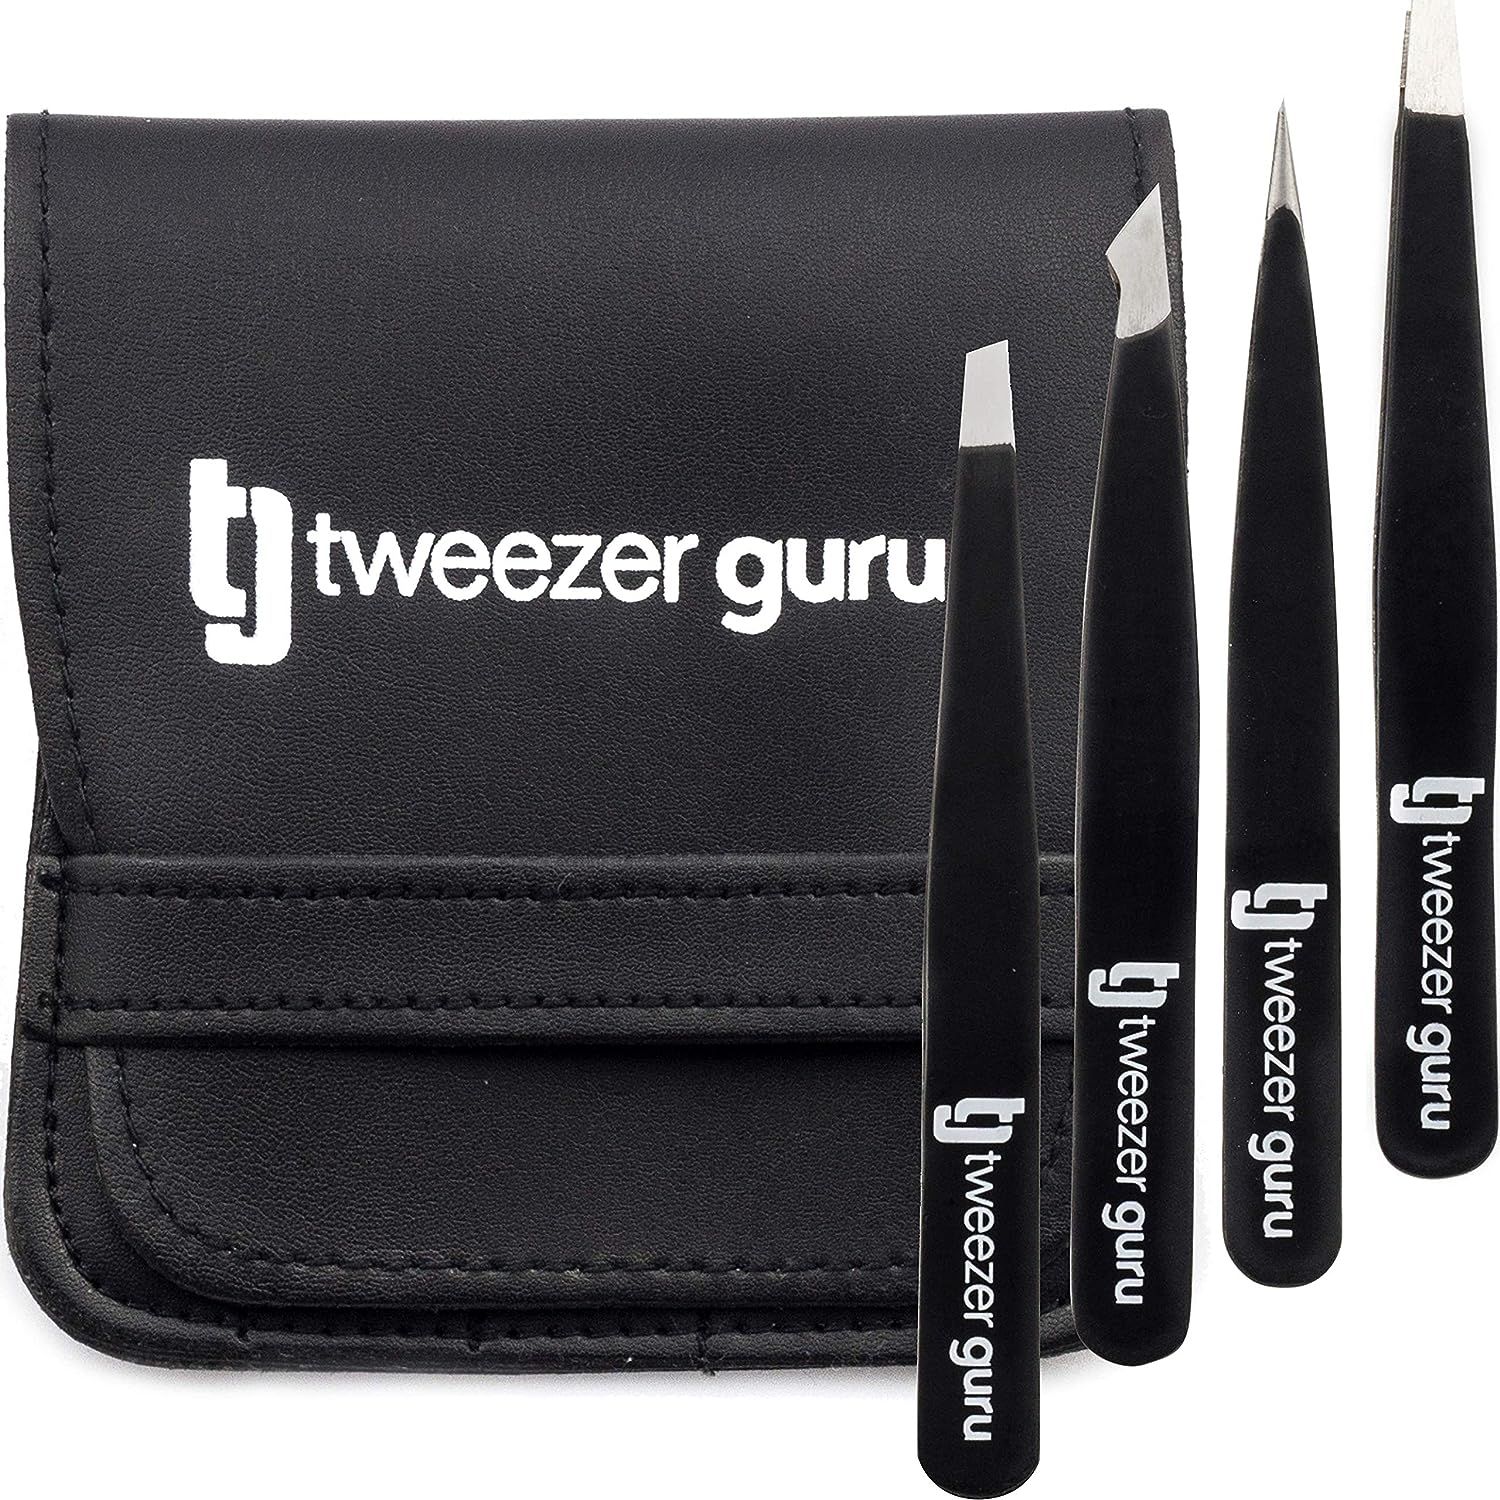 Tweezer Guru Eyebrow Tweezer Set (4-Piece) for Women & Men - Professional Slant and Pointed Tweez... | Amazon (US)